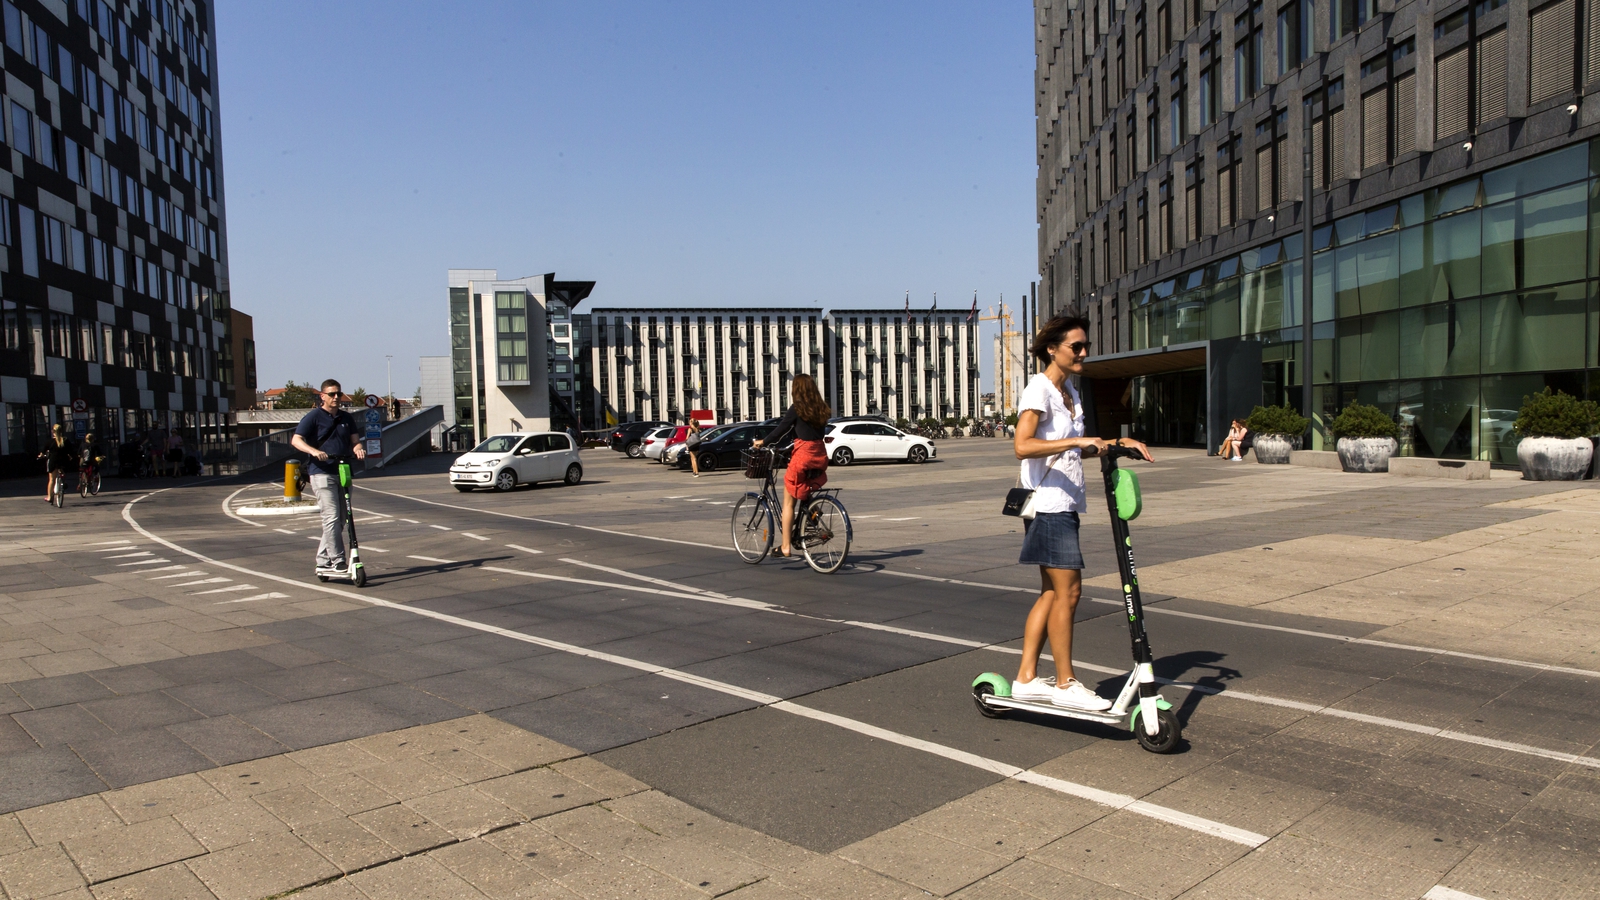 Vestlig Glad hår Copenhagen lifts ban on electric scooters